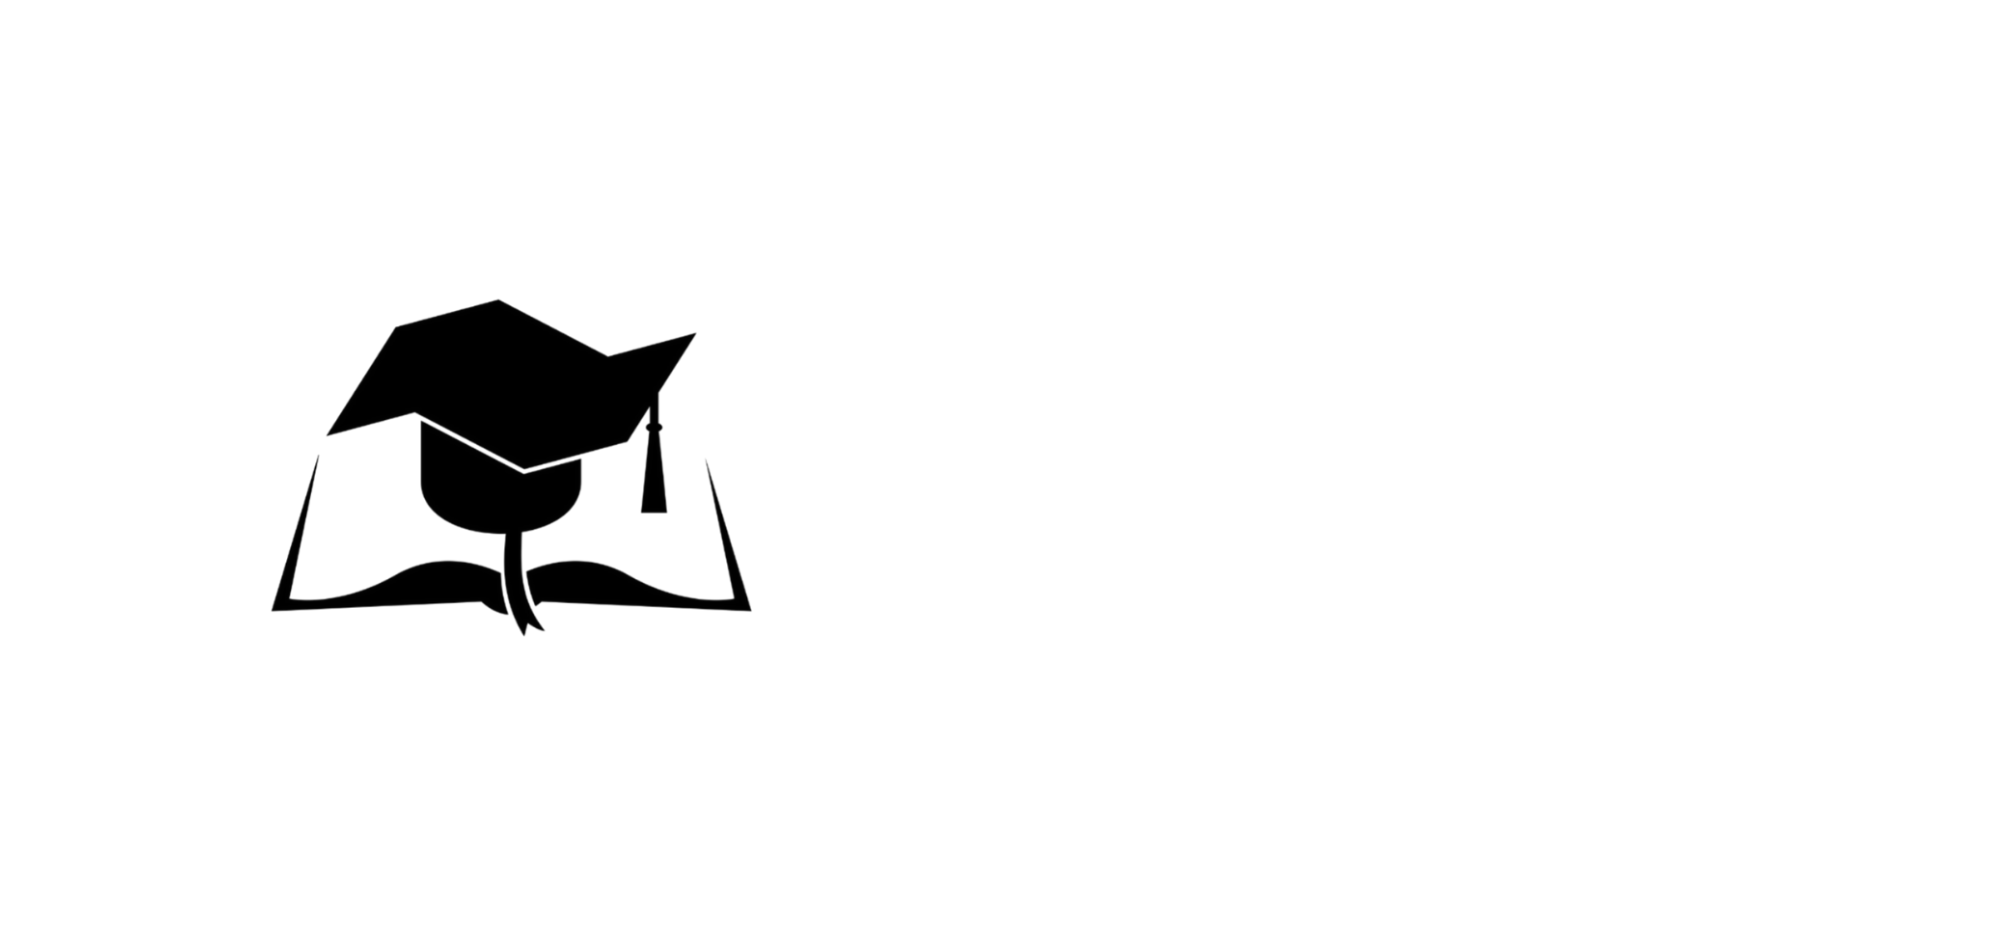 faculdade-batista-logos-logo-white